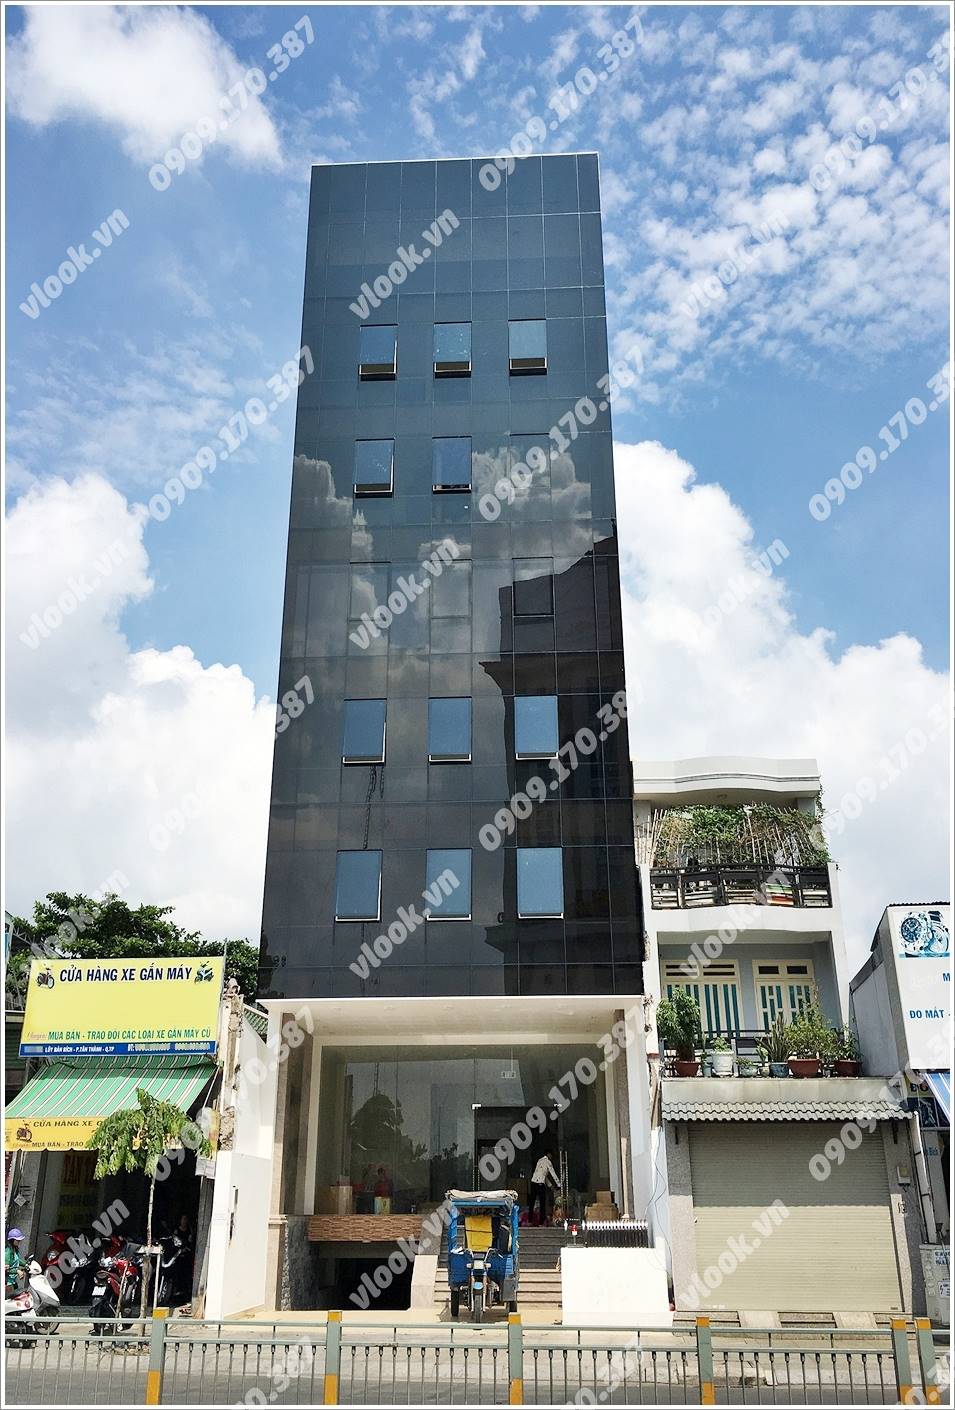 Cao ốc cho thuê văn phòng CBL Building, Lũy Bán Bích, Quận Tân Phú, TPHCM - vlook.vn